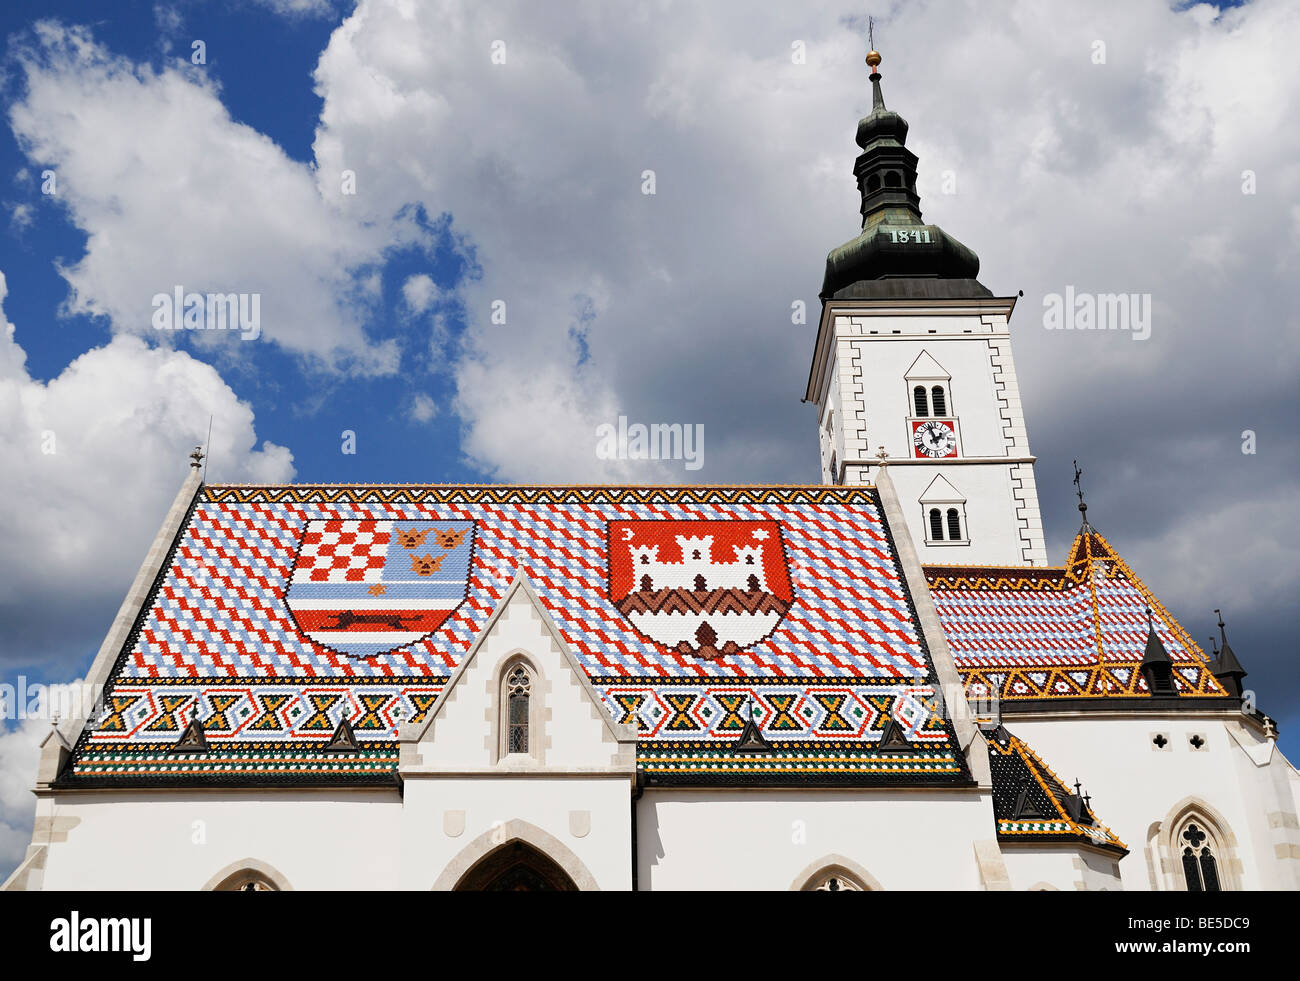 Kirche St. Marks mit Muster der Schilde auf seine Ziegeldach. Zagreb, Kroatien, Osteuropa. Stockfoto